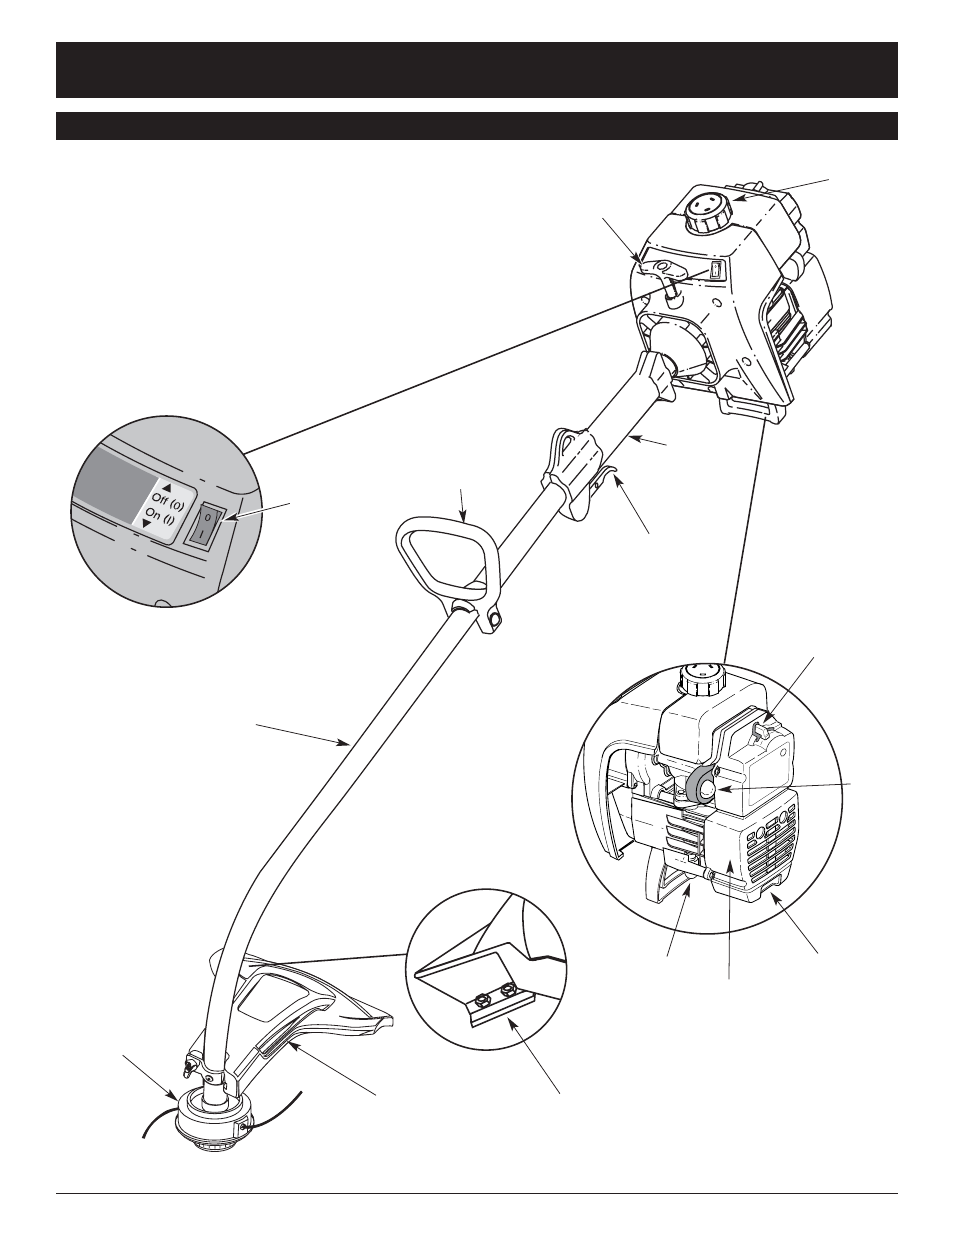 [DIAGRAM] Honda City Fuel Manual Diagram - MYDIAGRAM.ONLINE